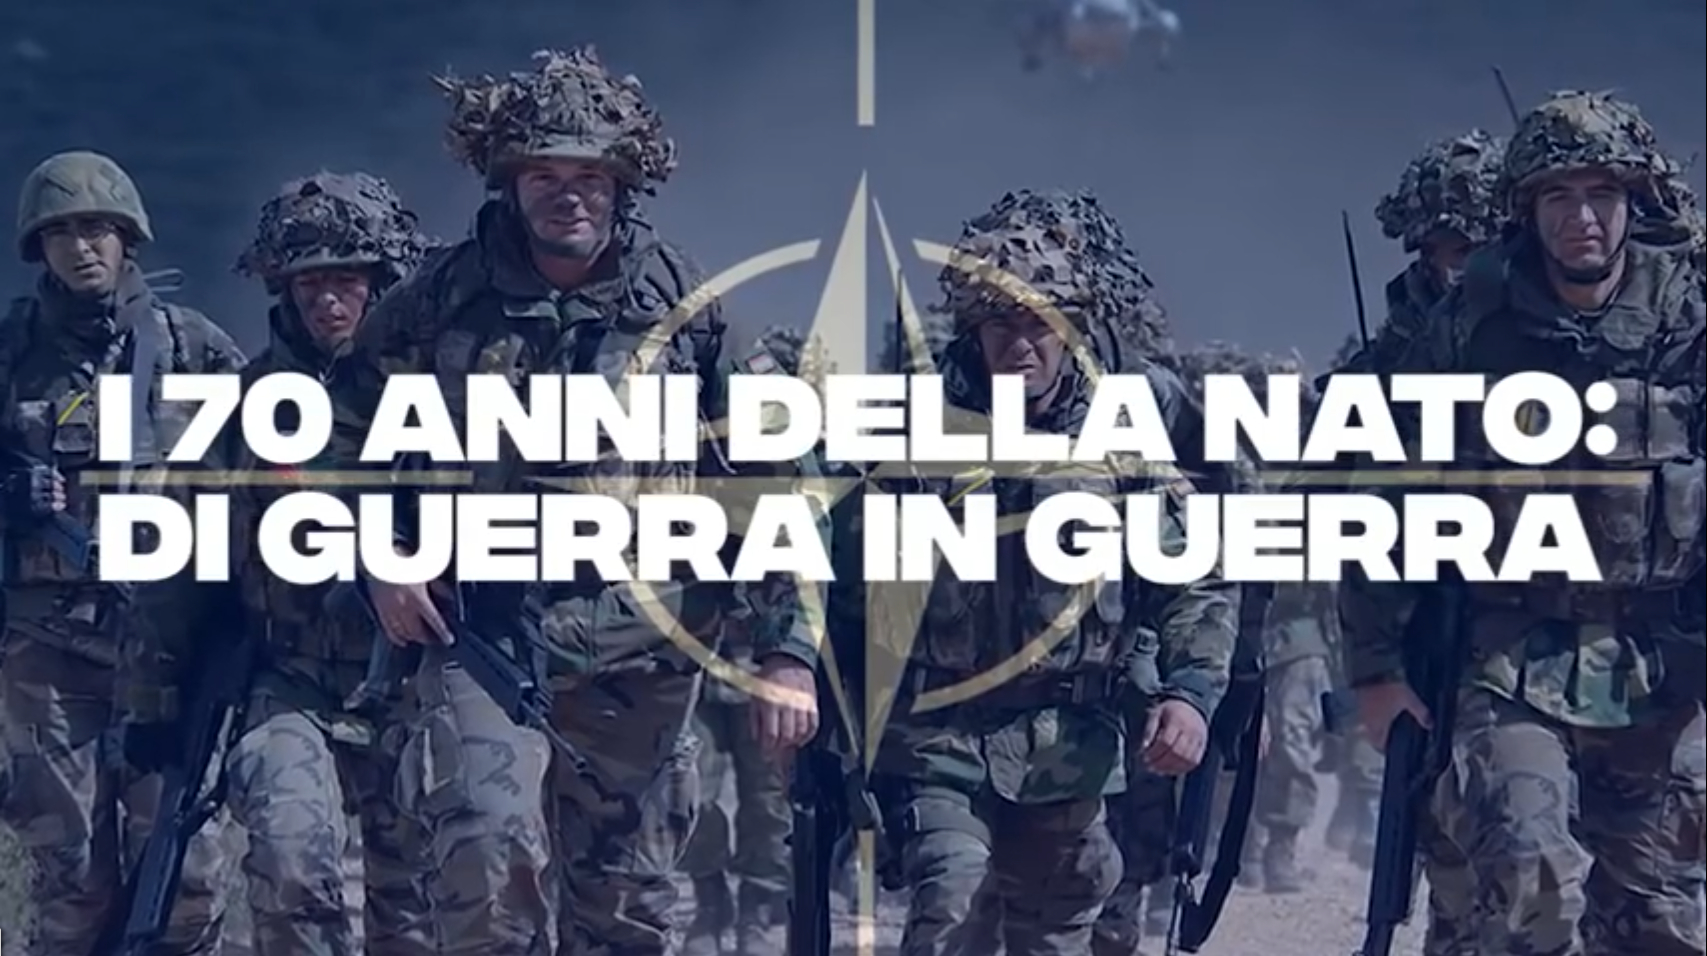 CLICCA QUI PER VEDERE IL VIDEO "I 70 anni della NATO di guerra in guerra (documentario 2019, Manlio Dinucci, PandoraTV)"